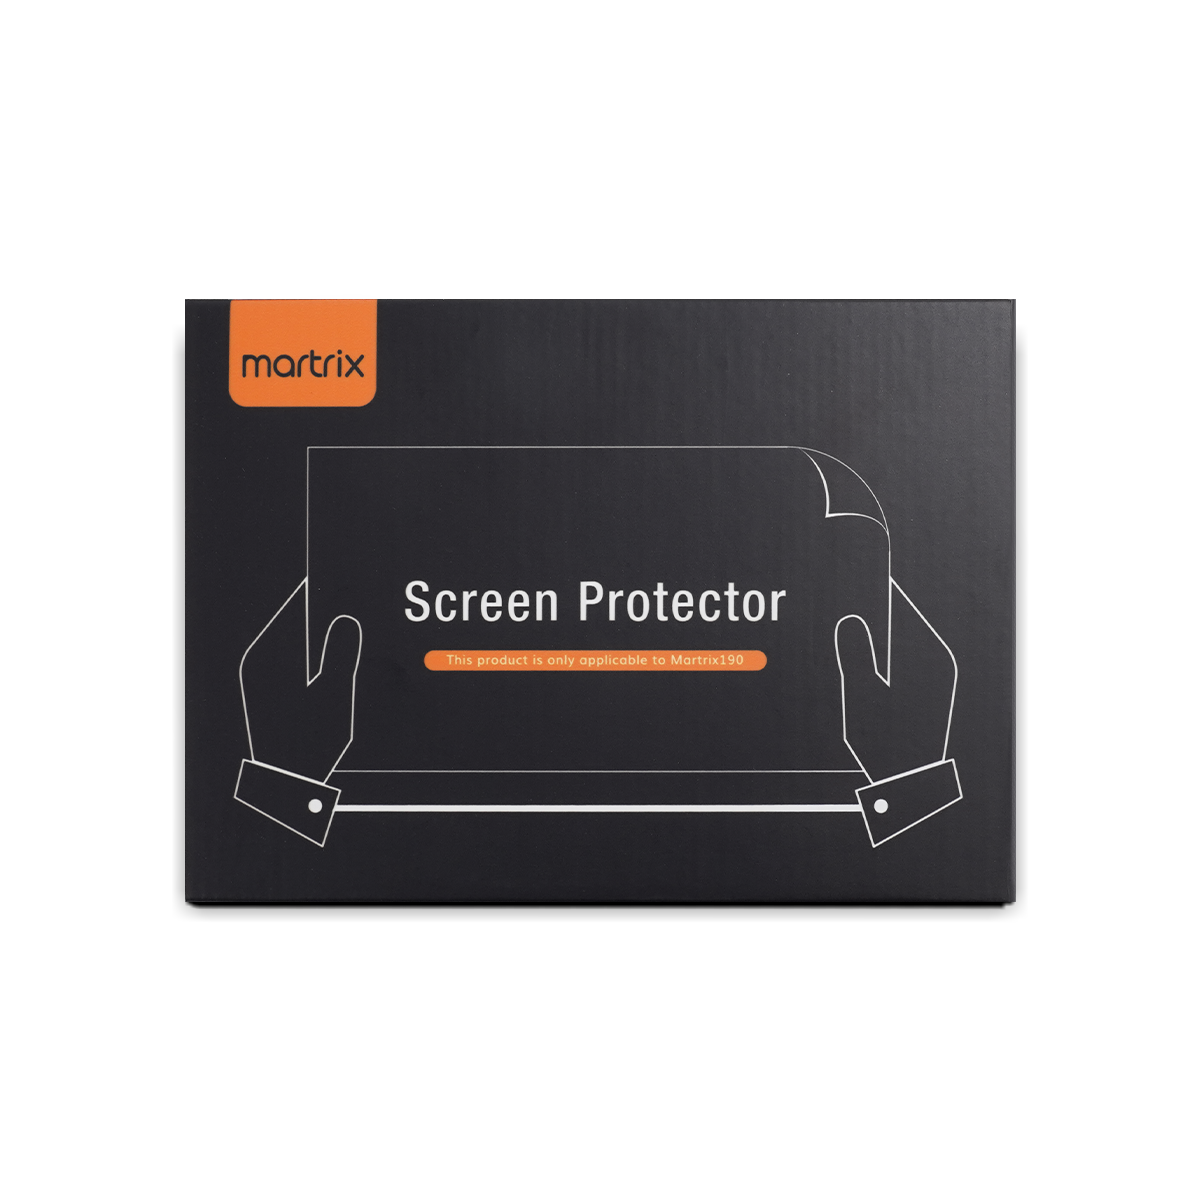 Screen Protecter